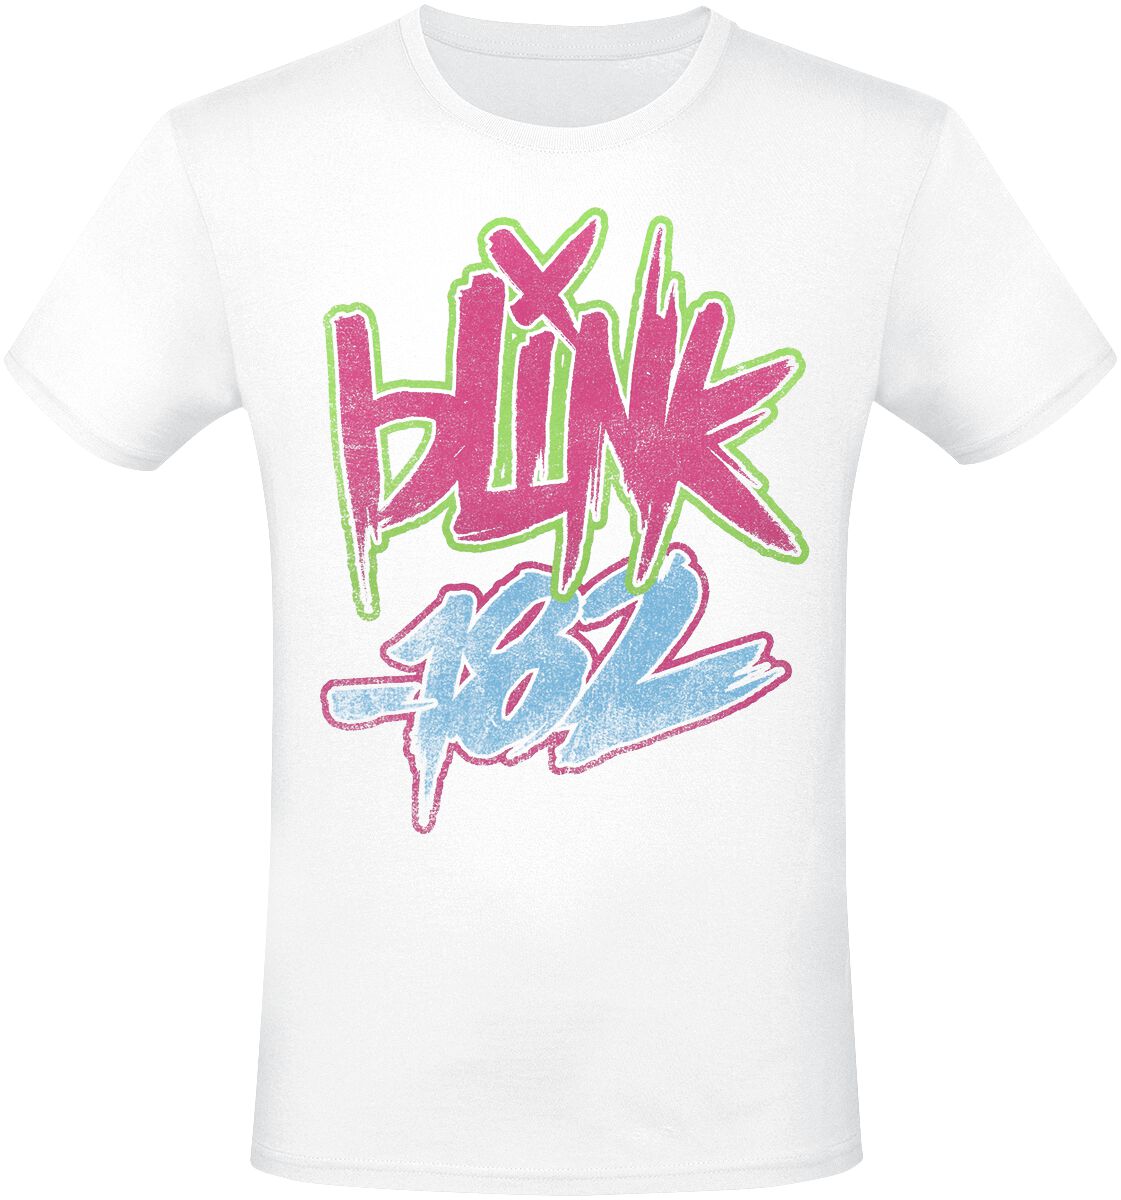 Blink-182 T-Shirt - Text - S bis 3XL - für Männer - Größe 3XL - weiß  - Lizenziertes Merchandise!